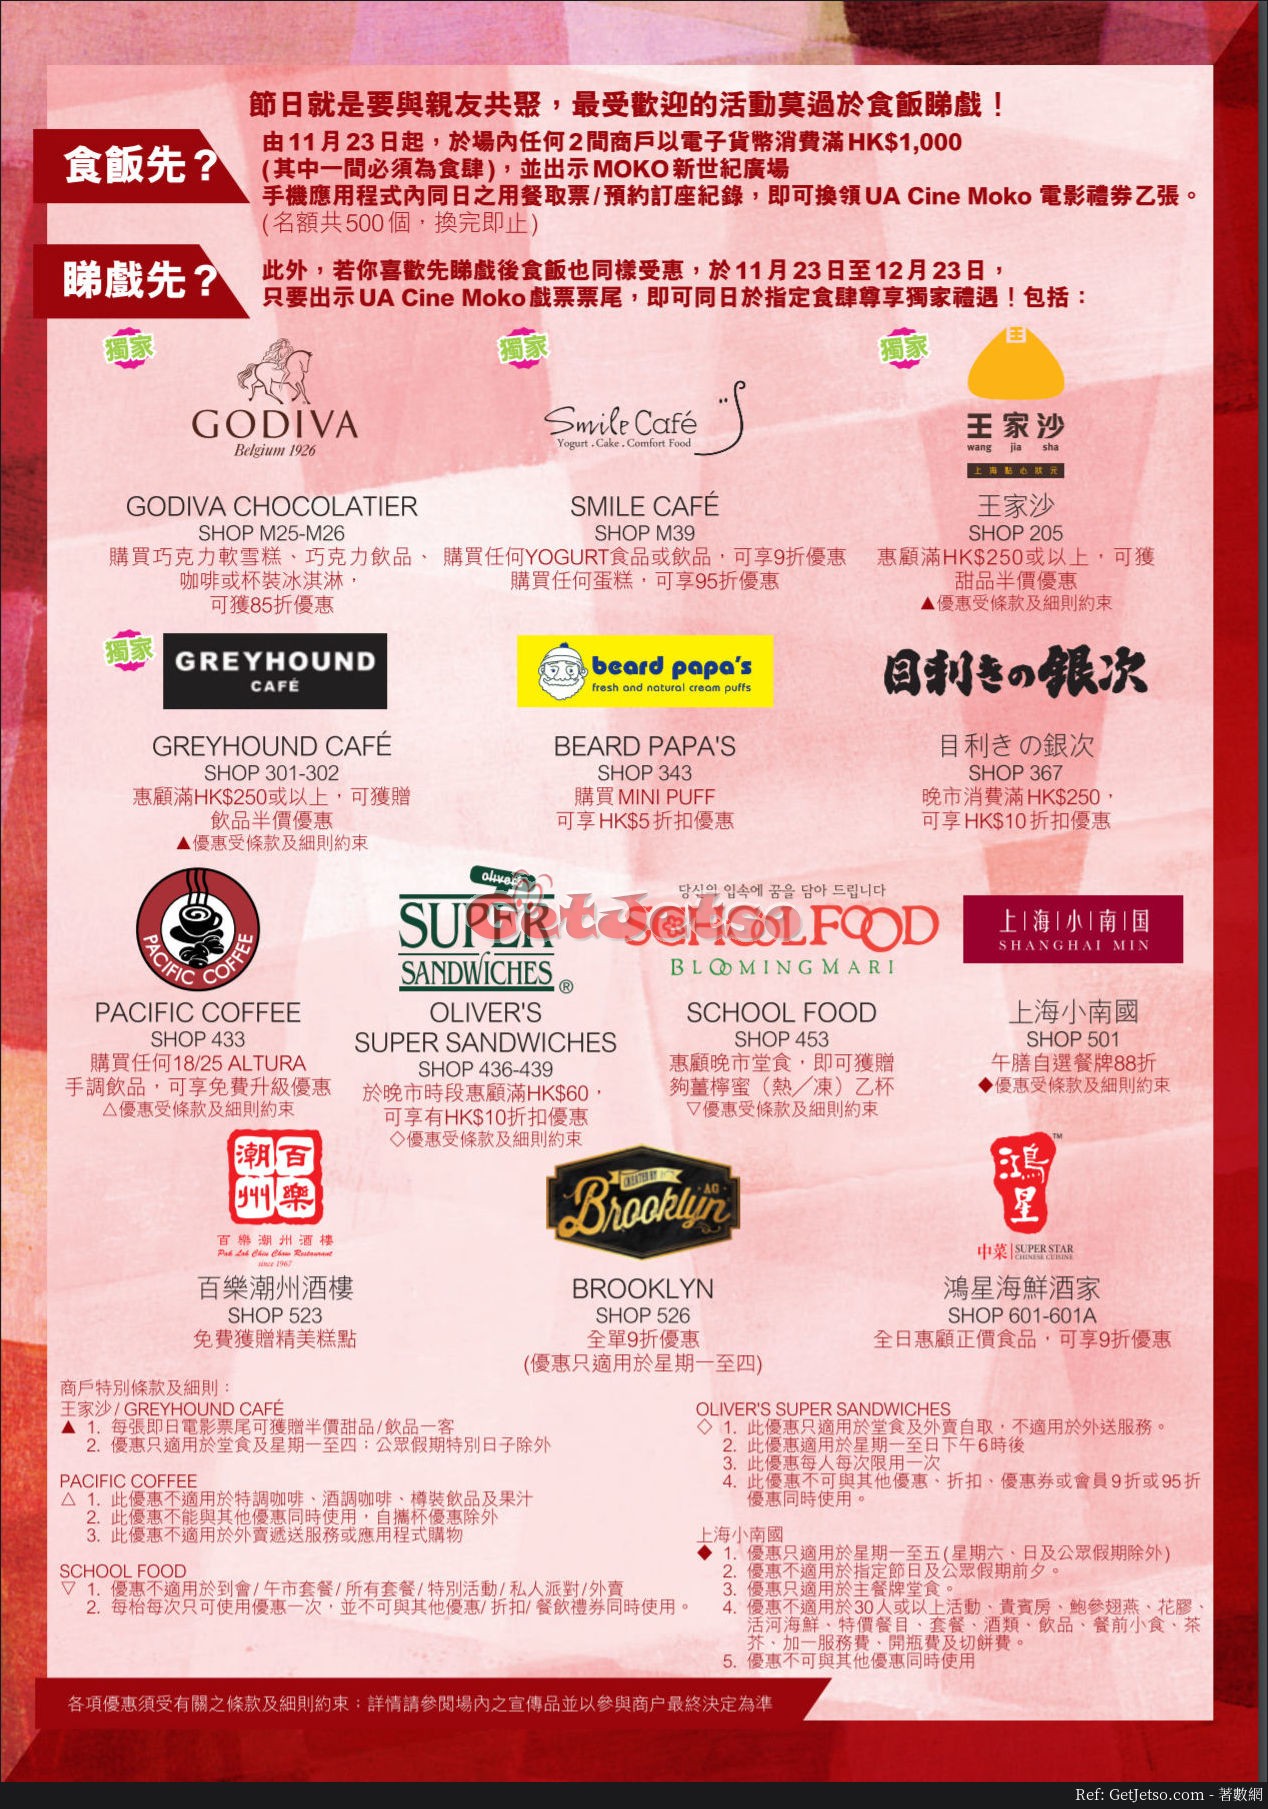 MOKO 新世紀廣場感謝祭購物優惠(17年11月23-27日)圖片4